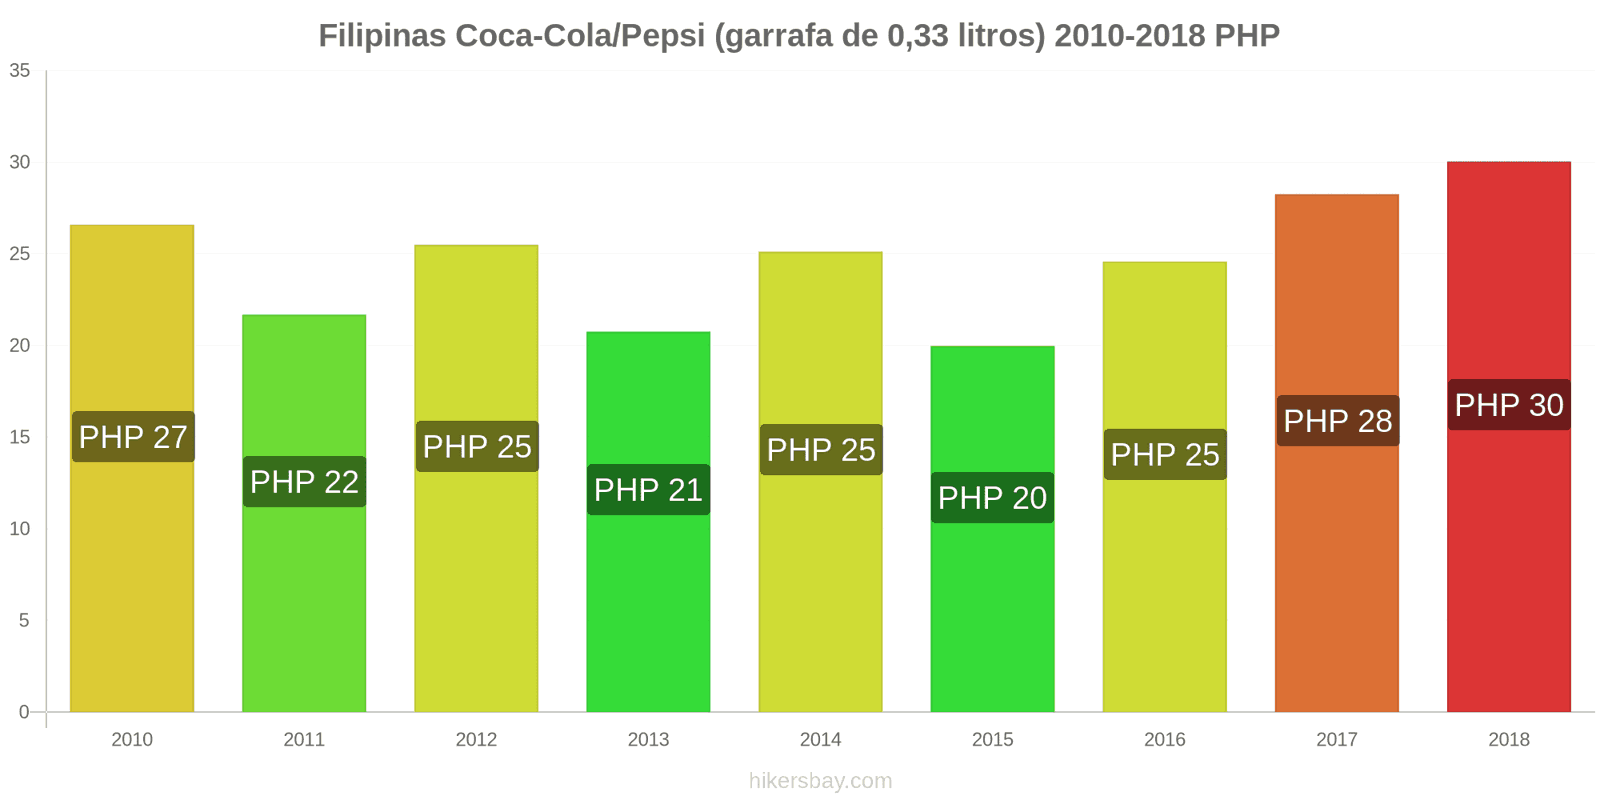 Filipinas mudanças de preços Coca-Cola/Pepsi (garrafa de 0.33 litros) hikersbay.com